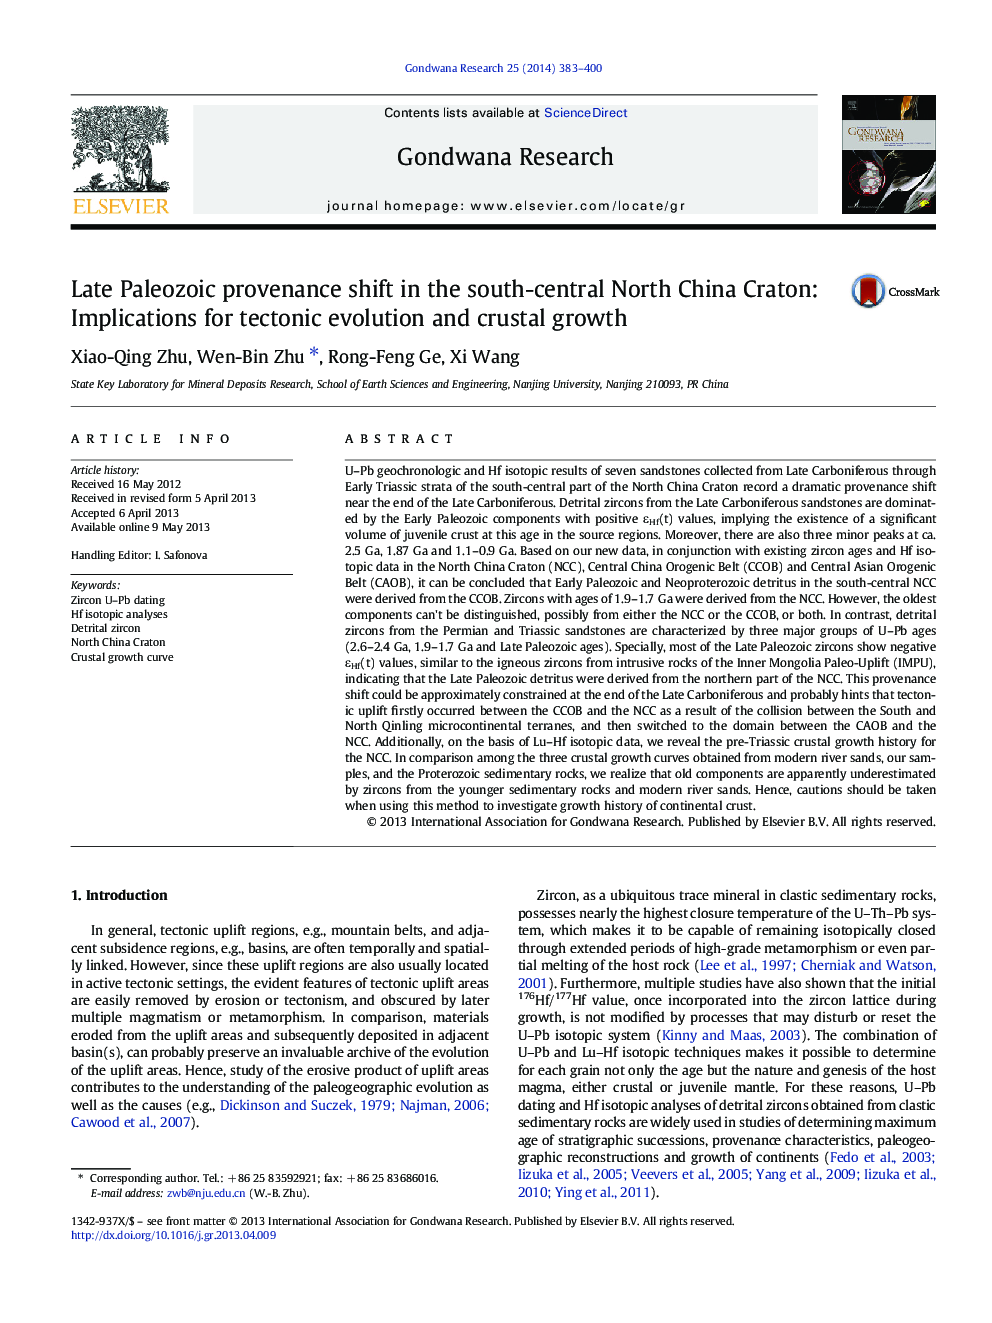 تغییرات اساسی پس از پالئوزوئیک در جنوب و مرکزی کرتون شمالی چین: پیامدهای تکامل تکتونیکی و رشد پوسته 